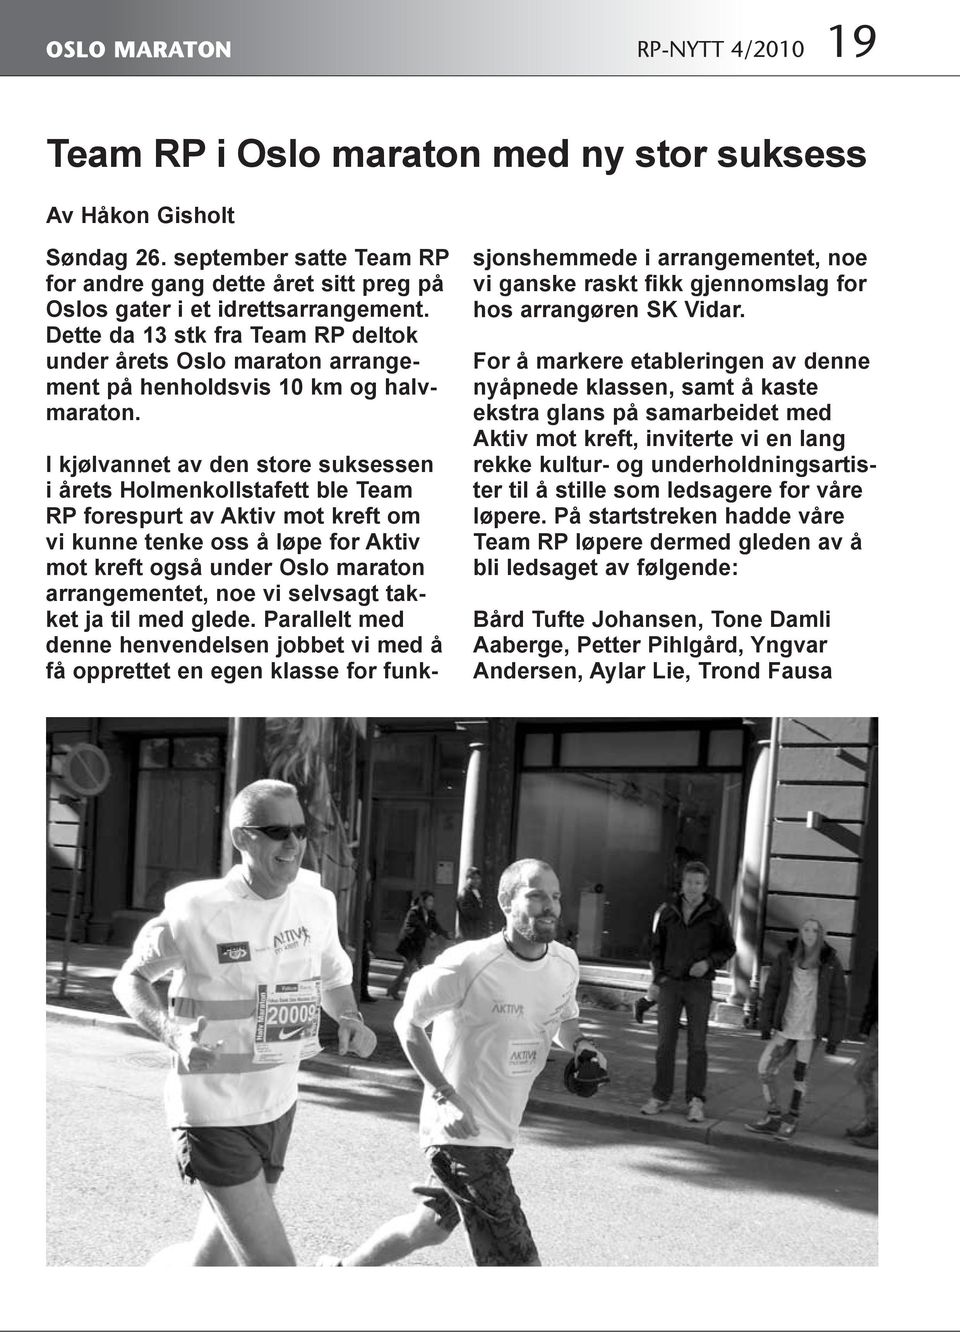 Dette da 13 stk fra Team RP deltok under årets Oslo maraton arrangement på henholdsvis 10 km og halvmaraton.